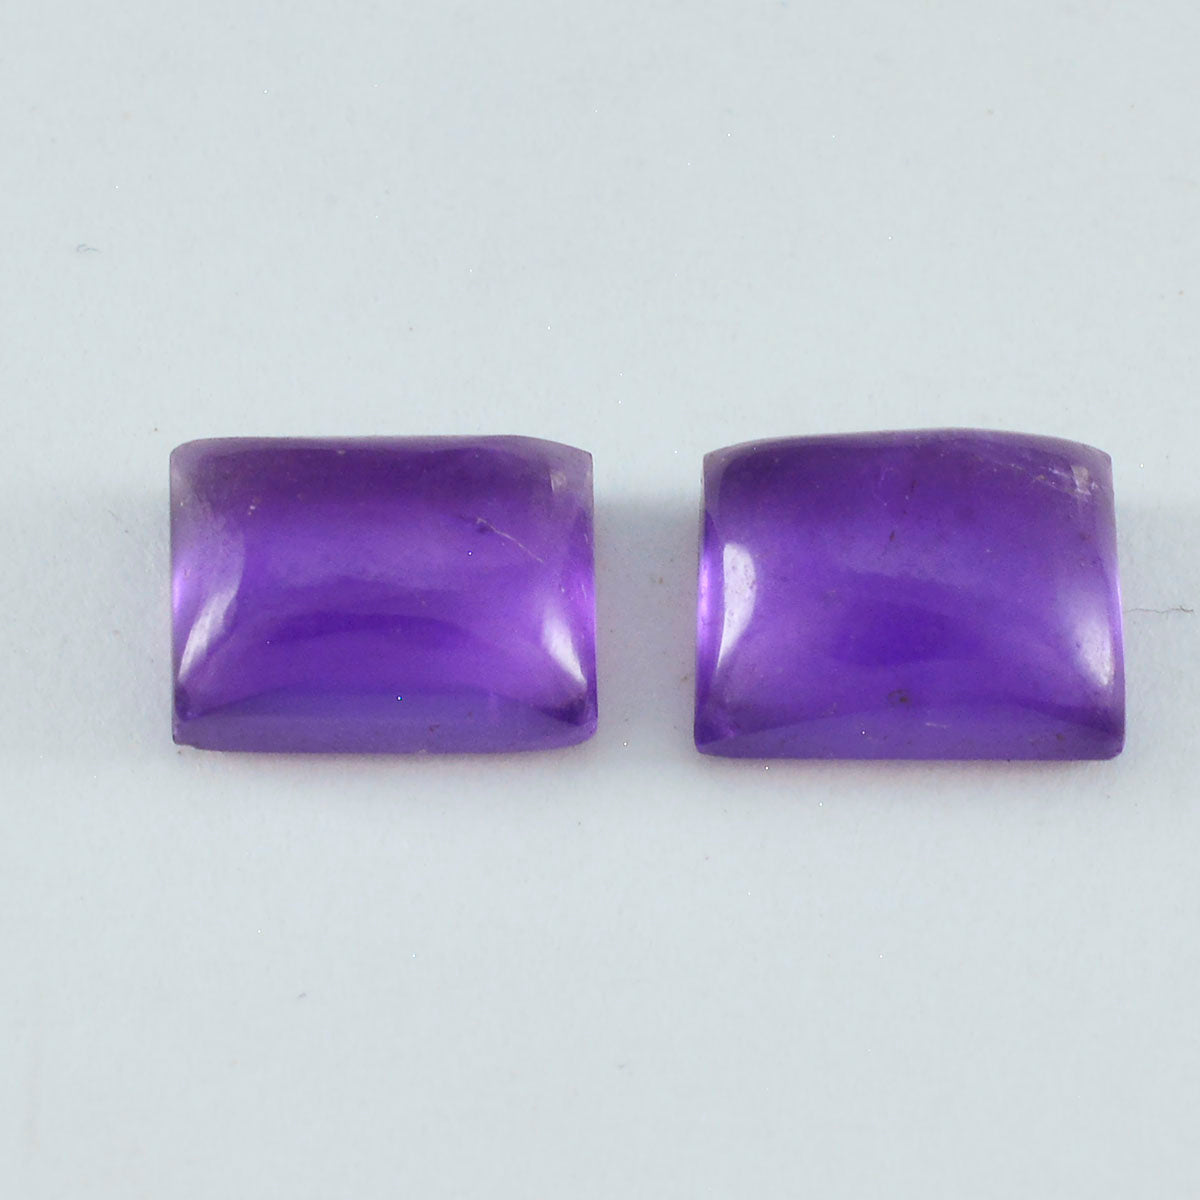 Riyogems 1PC Purple Amethyst Cabochon 7X9 mm Octagon Shape great Quality Stone